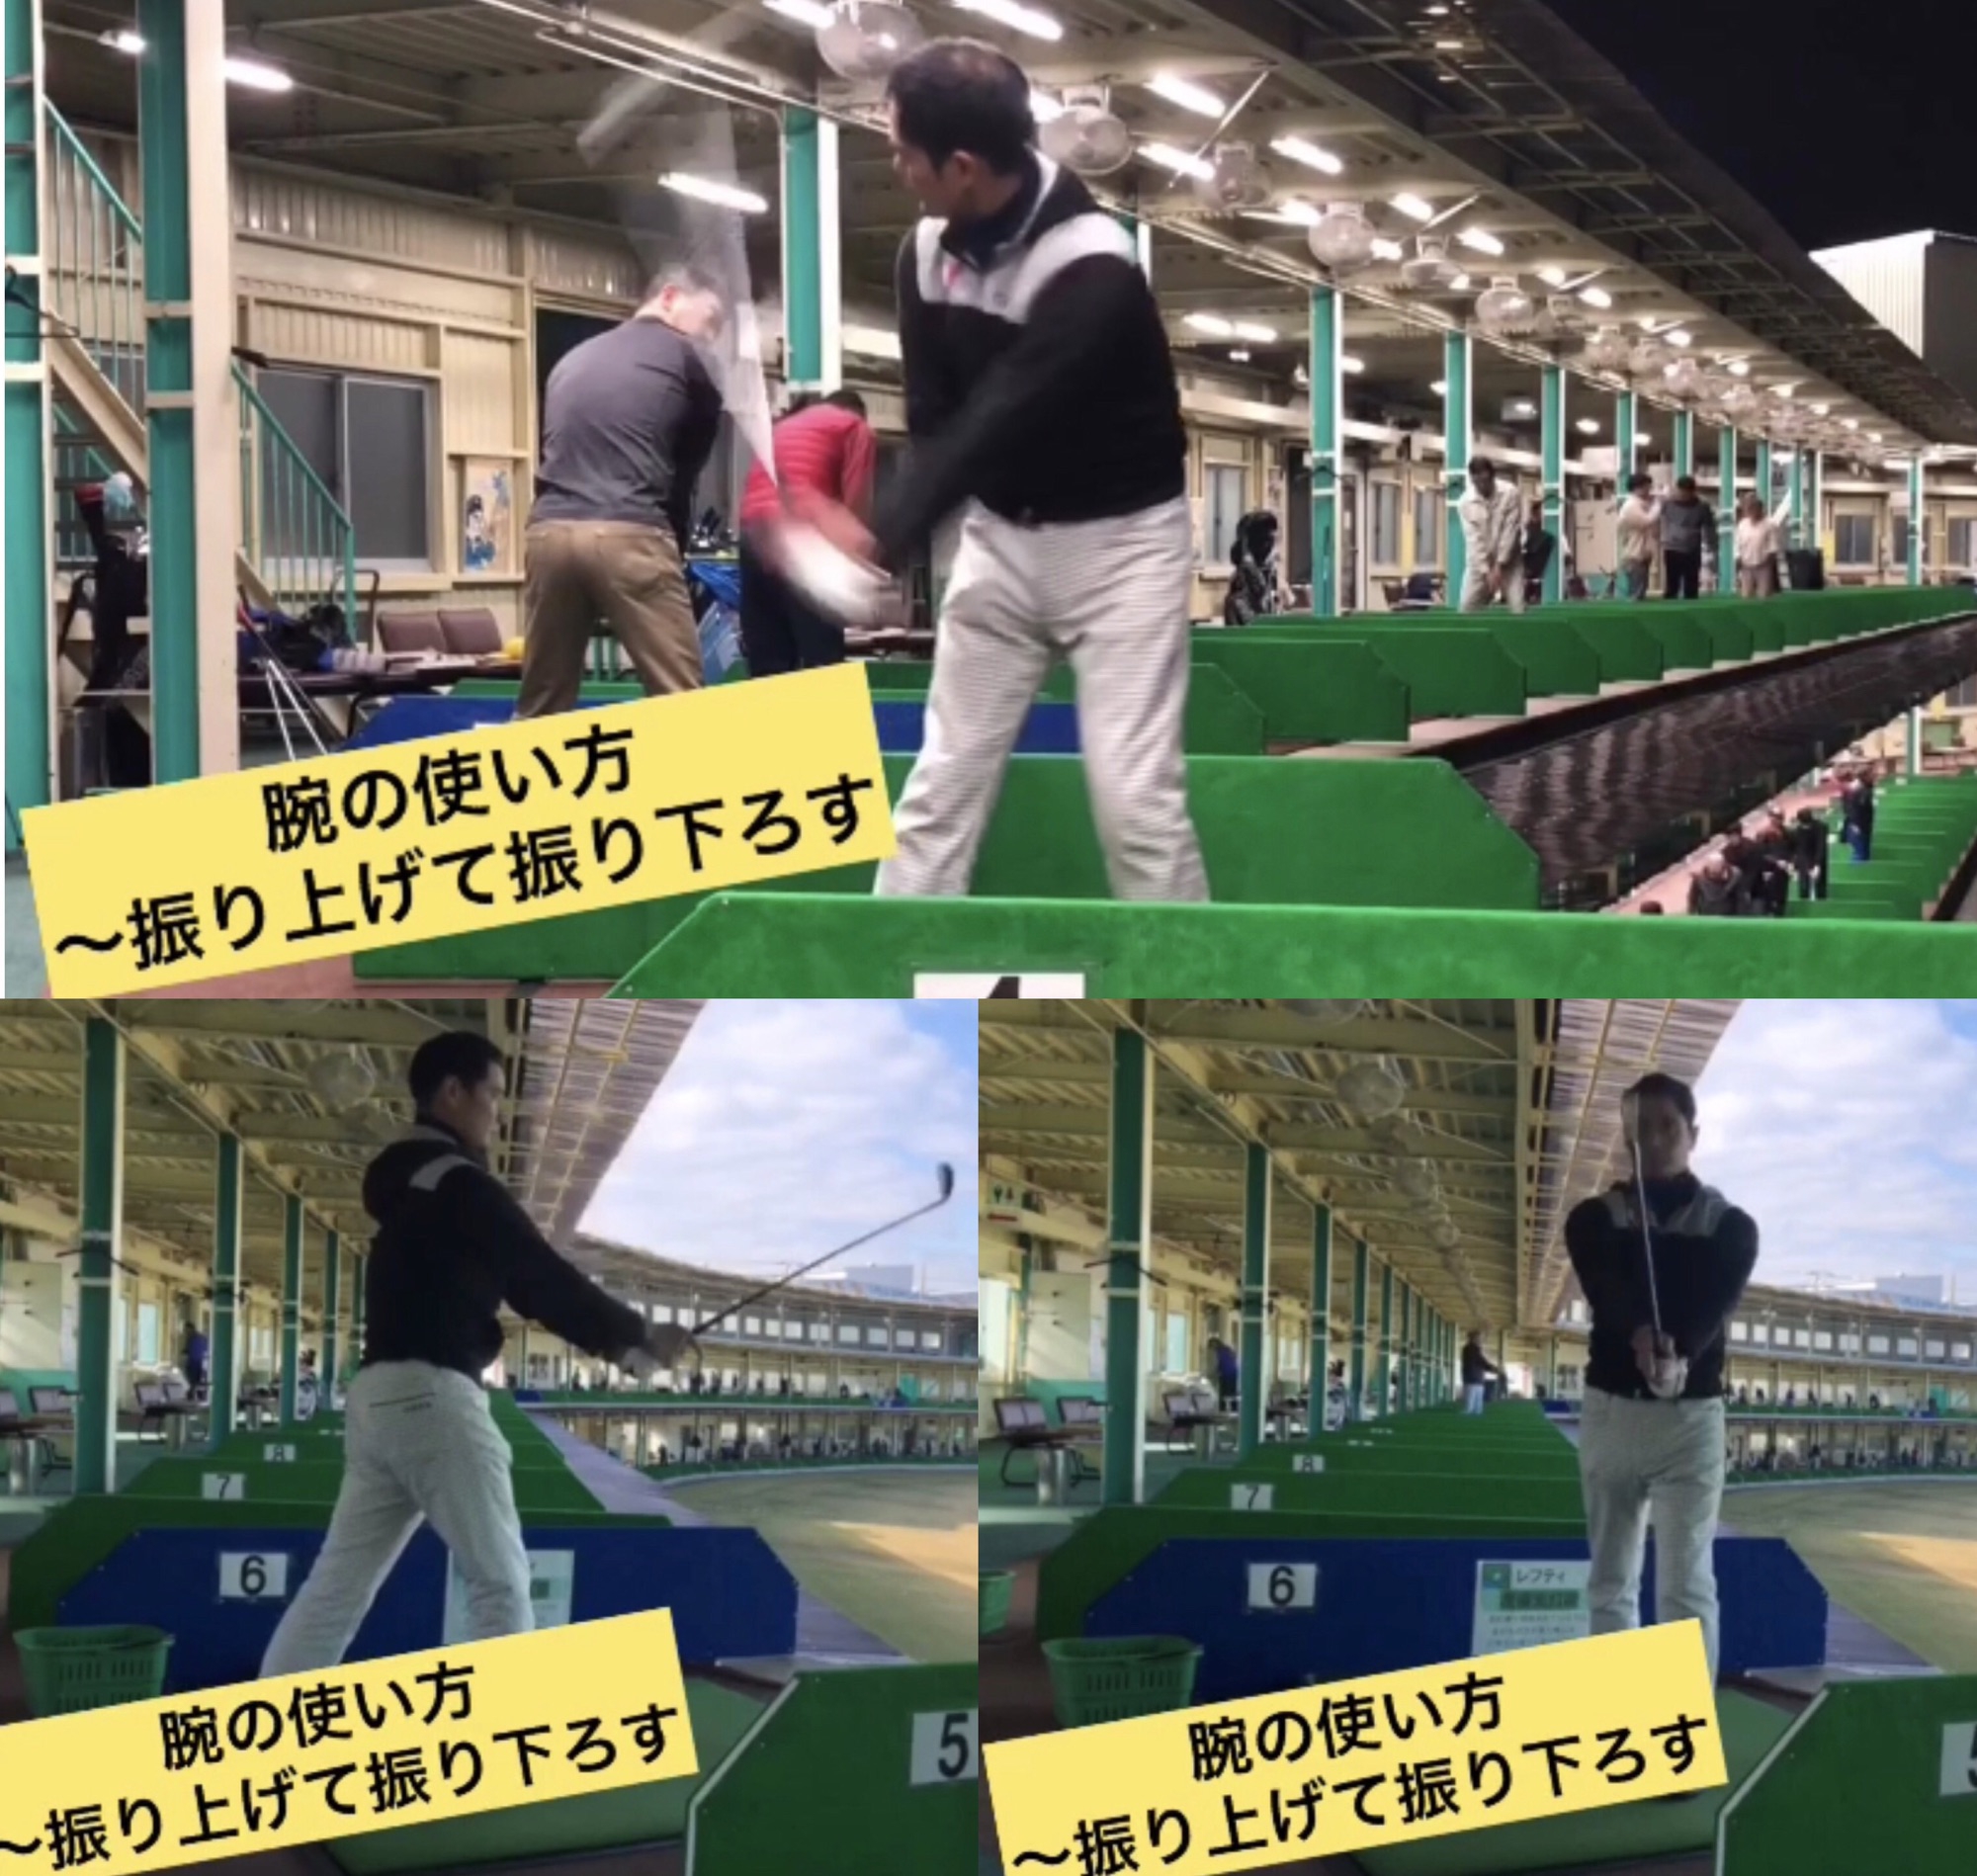 腕の使い方 力を入れるポイント 振り上げて振り下ろす Naokiゴルフ塾 大阪 堺市のゴルフスクール